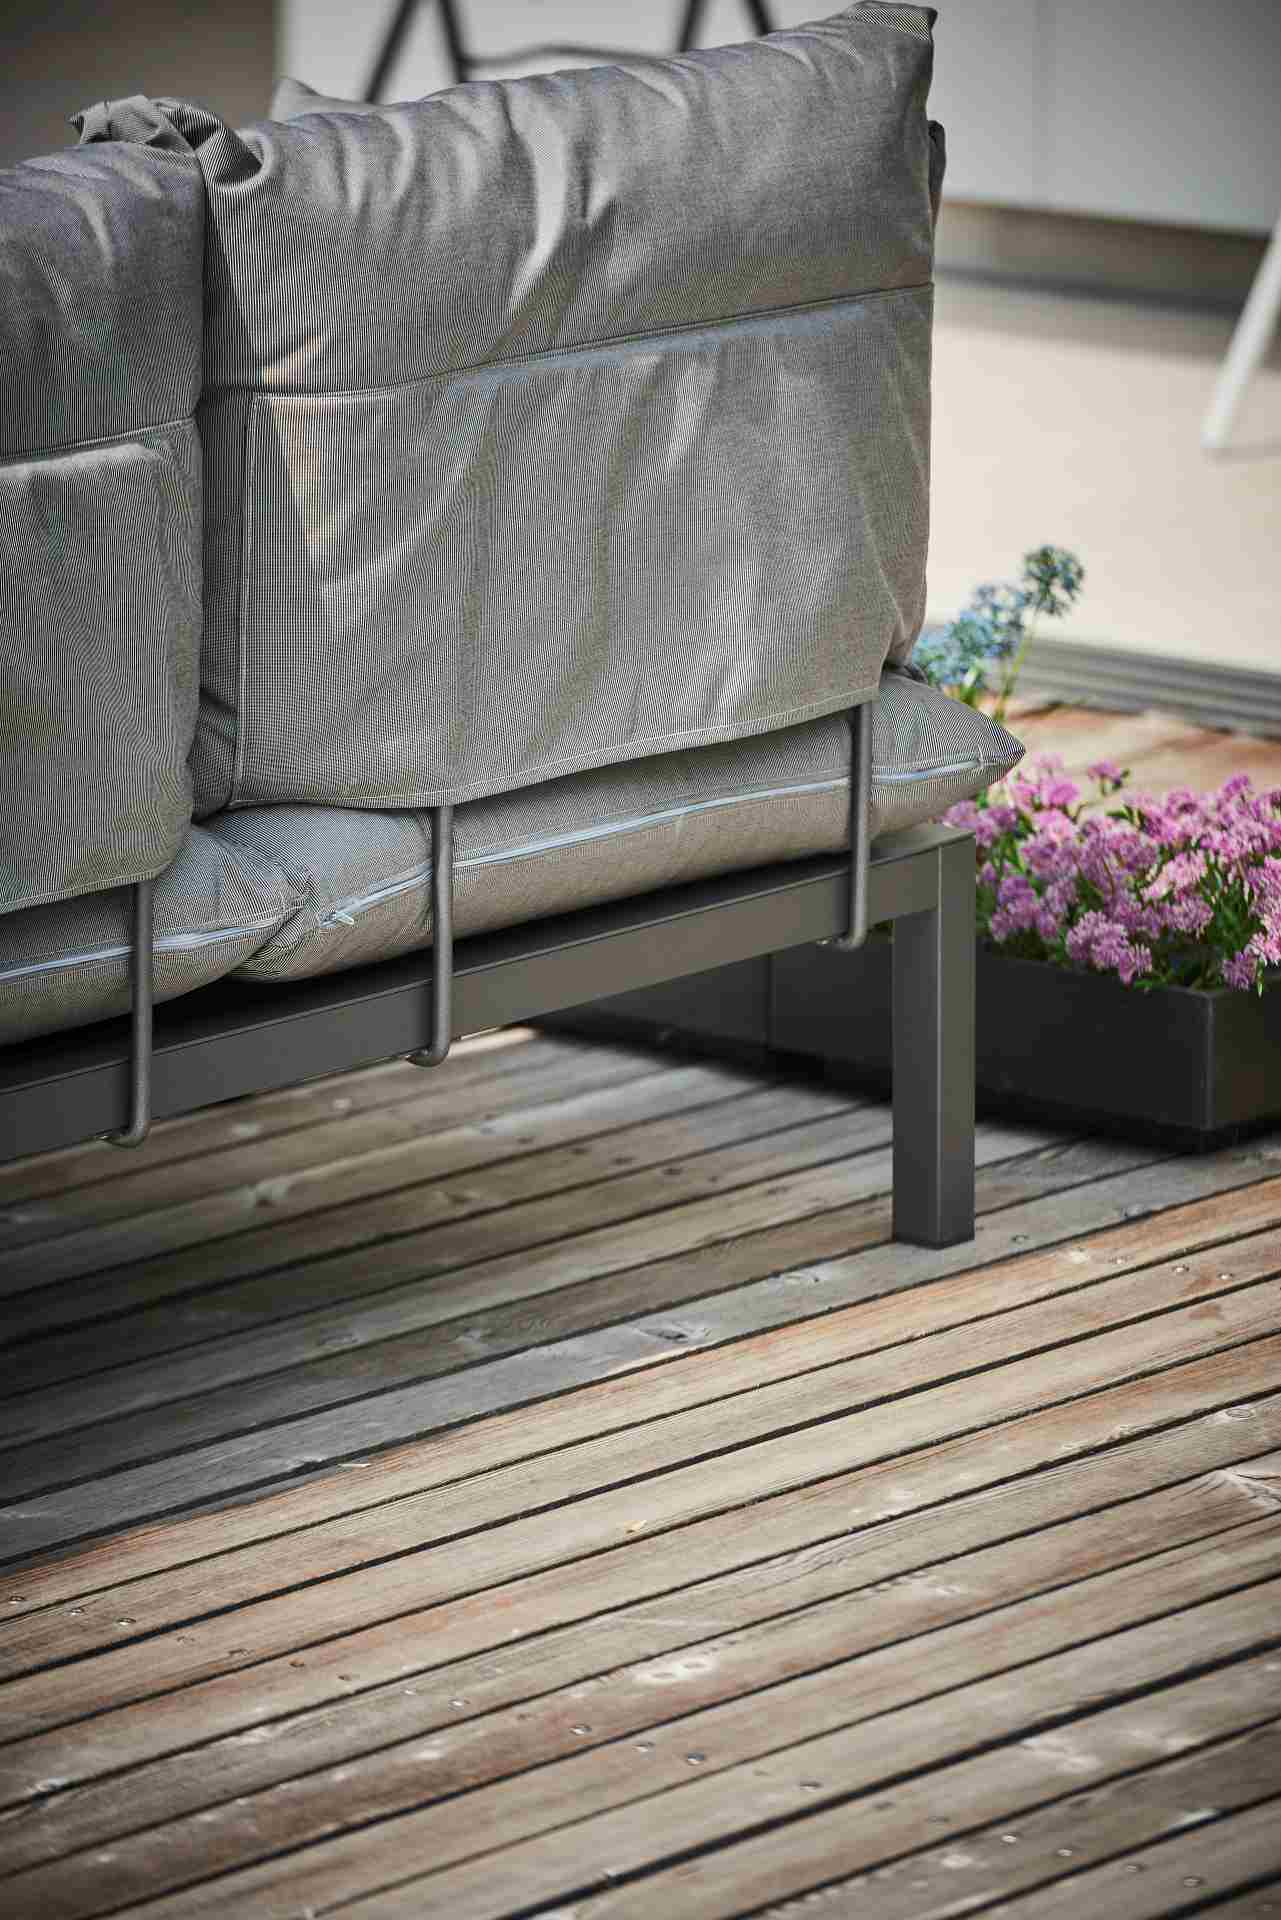 Der moderne Sessel Domino überzeugt mit seinem modernen Design. Er verfügt über ein Aluminium Gestell und ist somit perfekt für den Outdoor-Bereich einsetzbar. Designet wurde er von der Marke Jan Kurtz. Und hat die Farbkombination Gestell weiß und Bezug W